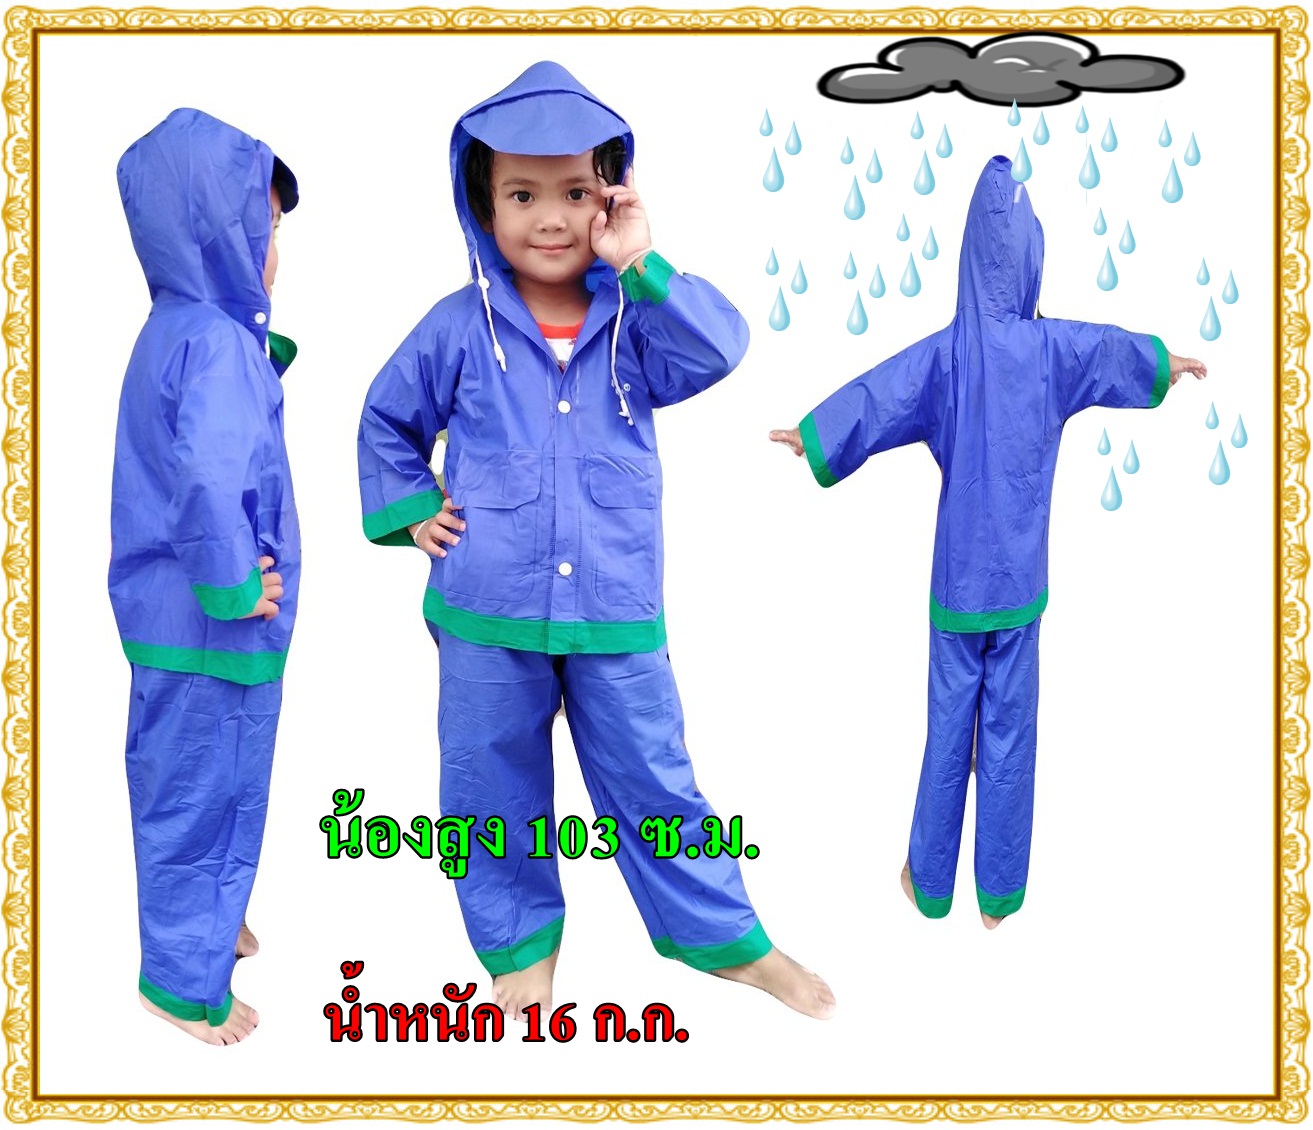 ใหม่!!! เสื้อกันฝนสำหรับเด็ก ผ้าหนาแยกส่วนเสื้อและกางเกง ใส่ได้ทั้งเด็กผู้ชายและเด็กผู้หญิง มีหลายสีให้เลือก #ชุดกันฝนเด็ก Size 2 #AS0065#